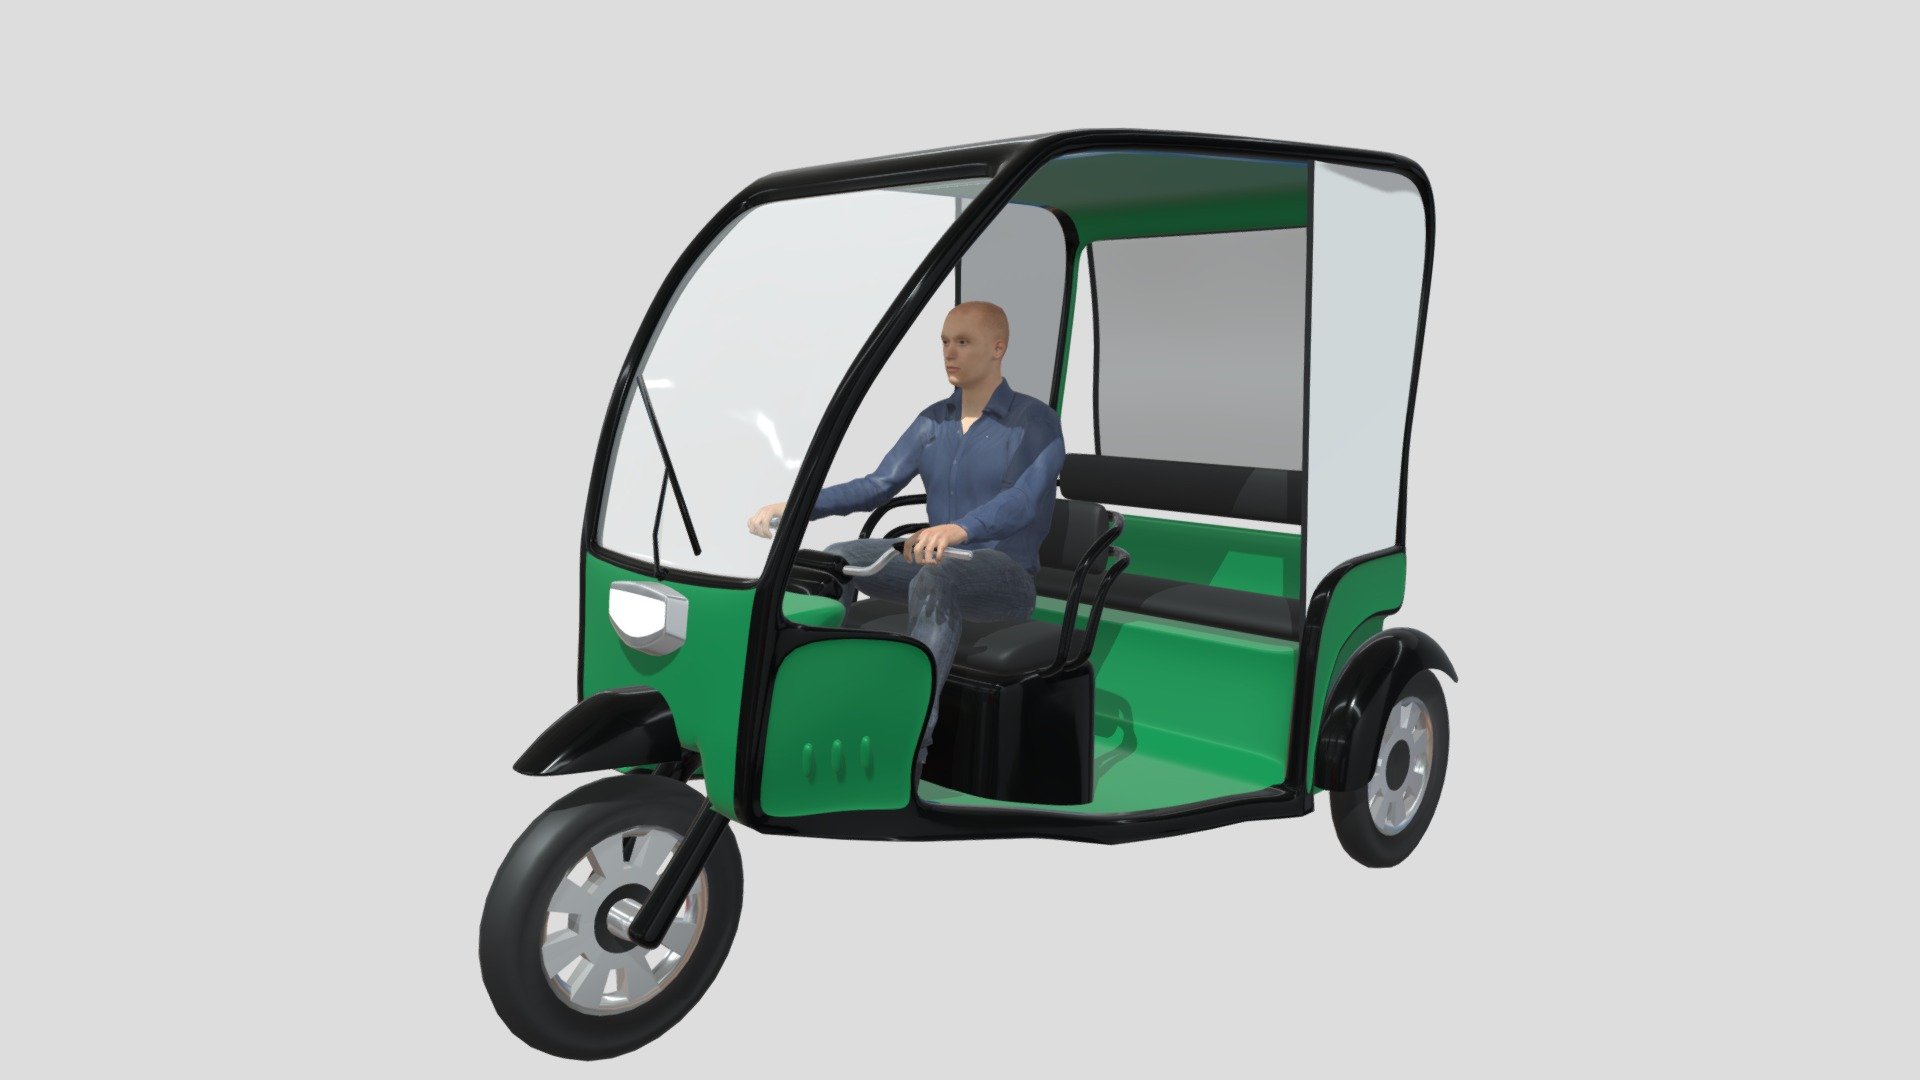 Rickshaw - 3D model by JohnnyRouddro 3d model